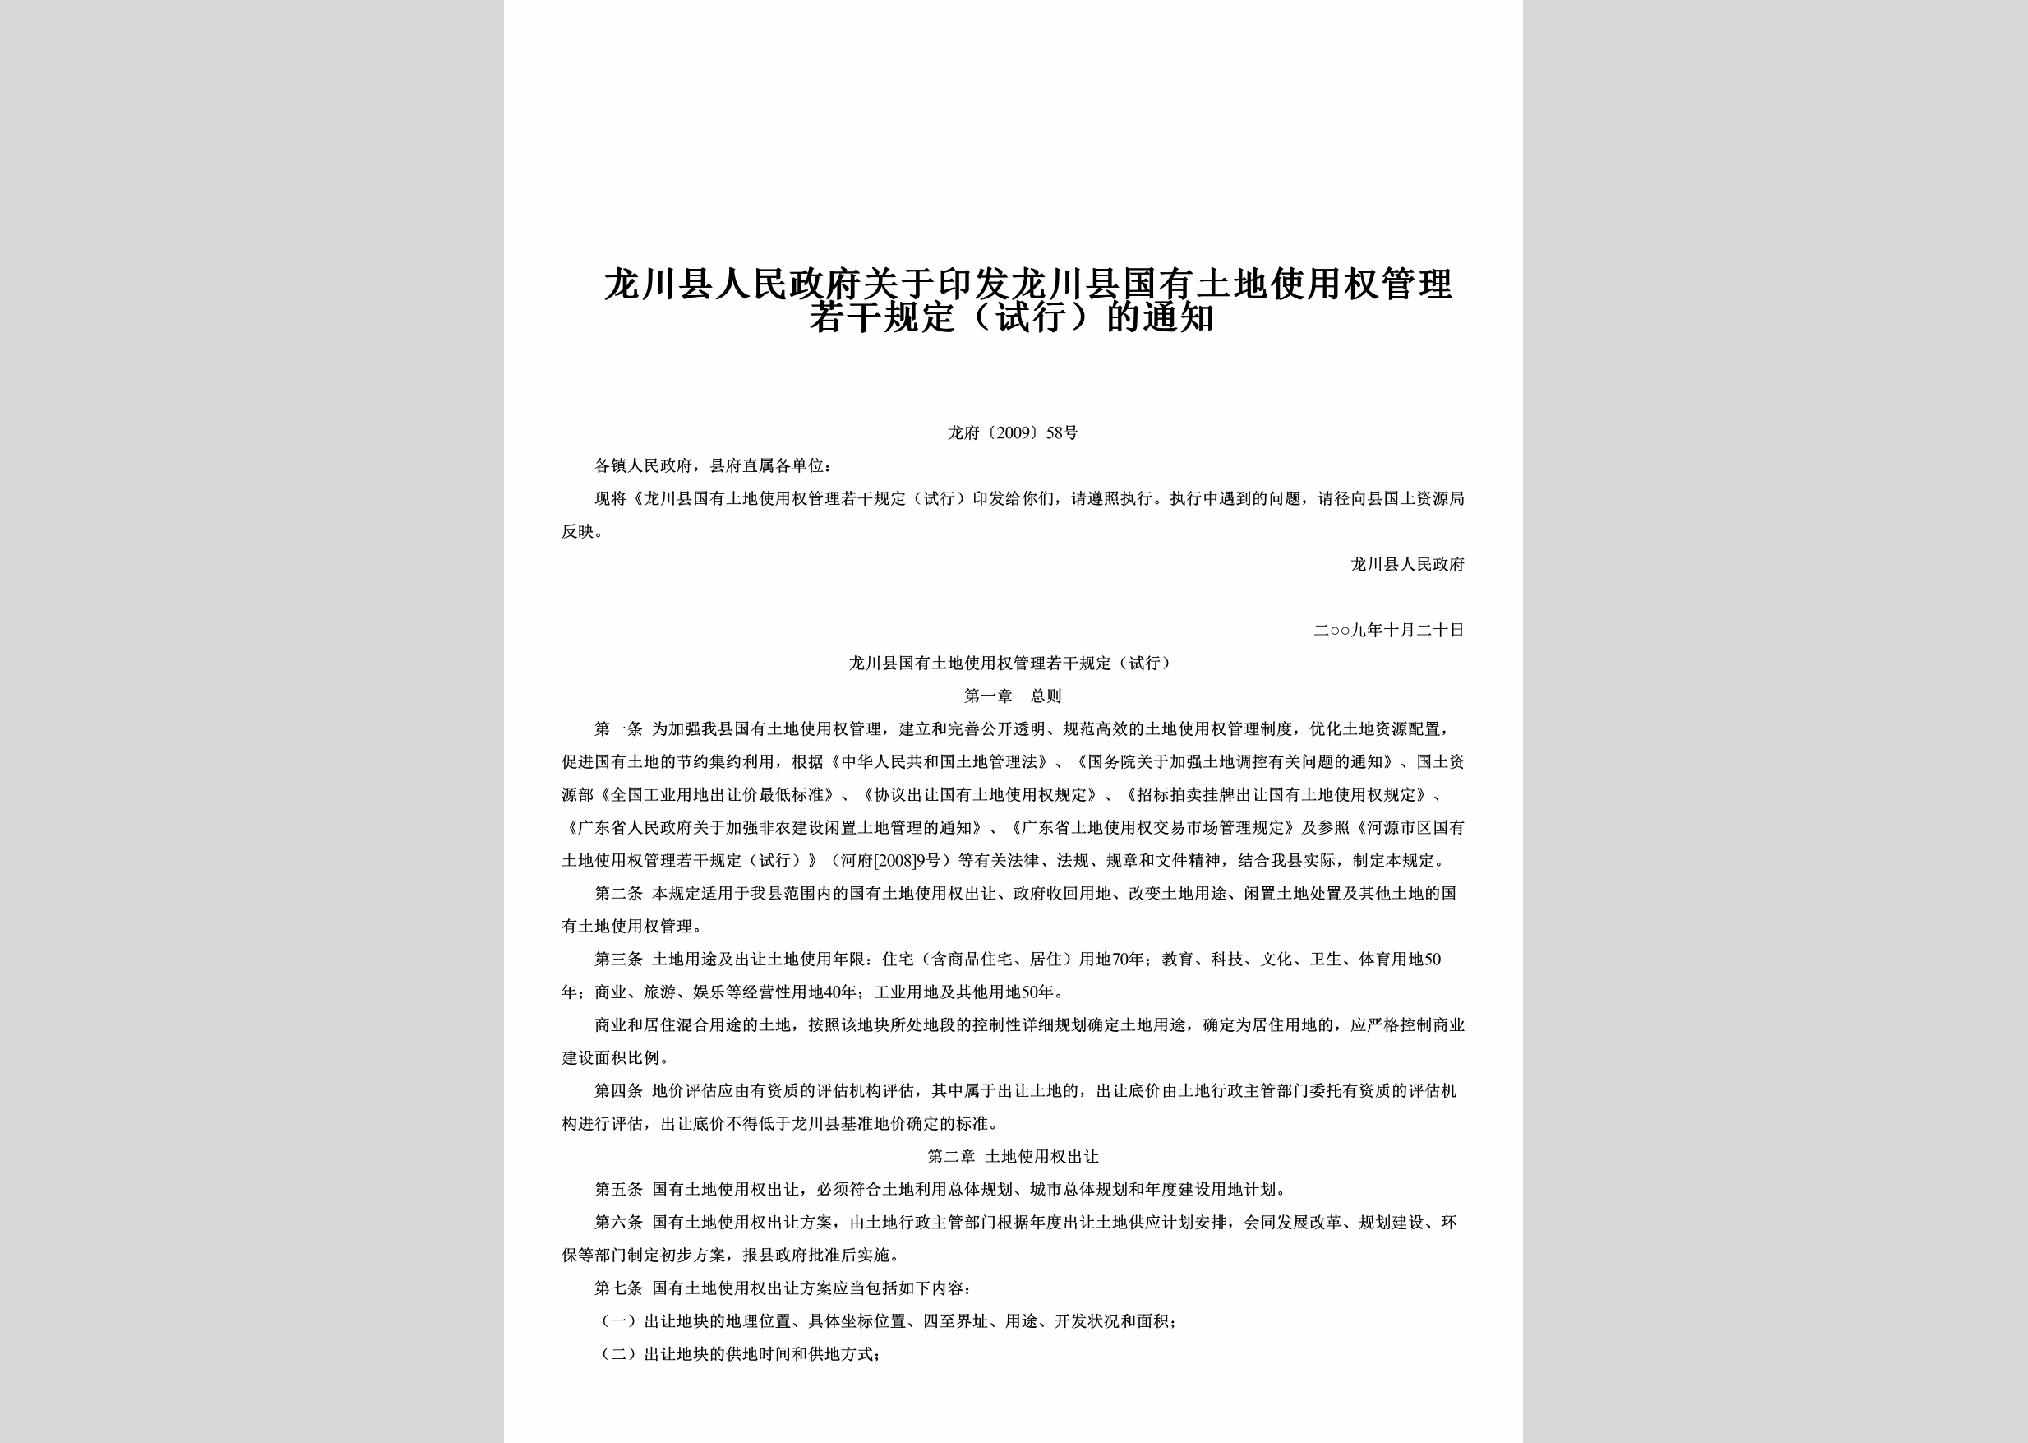 龙府[2009]58号：关于印发龙川县国有土地使用权管理若干规定（试行）的通知